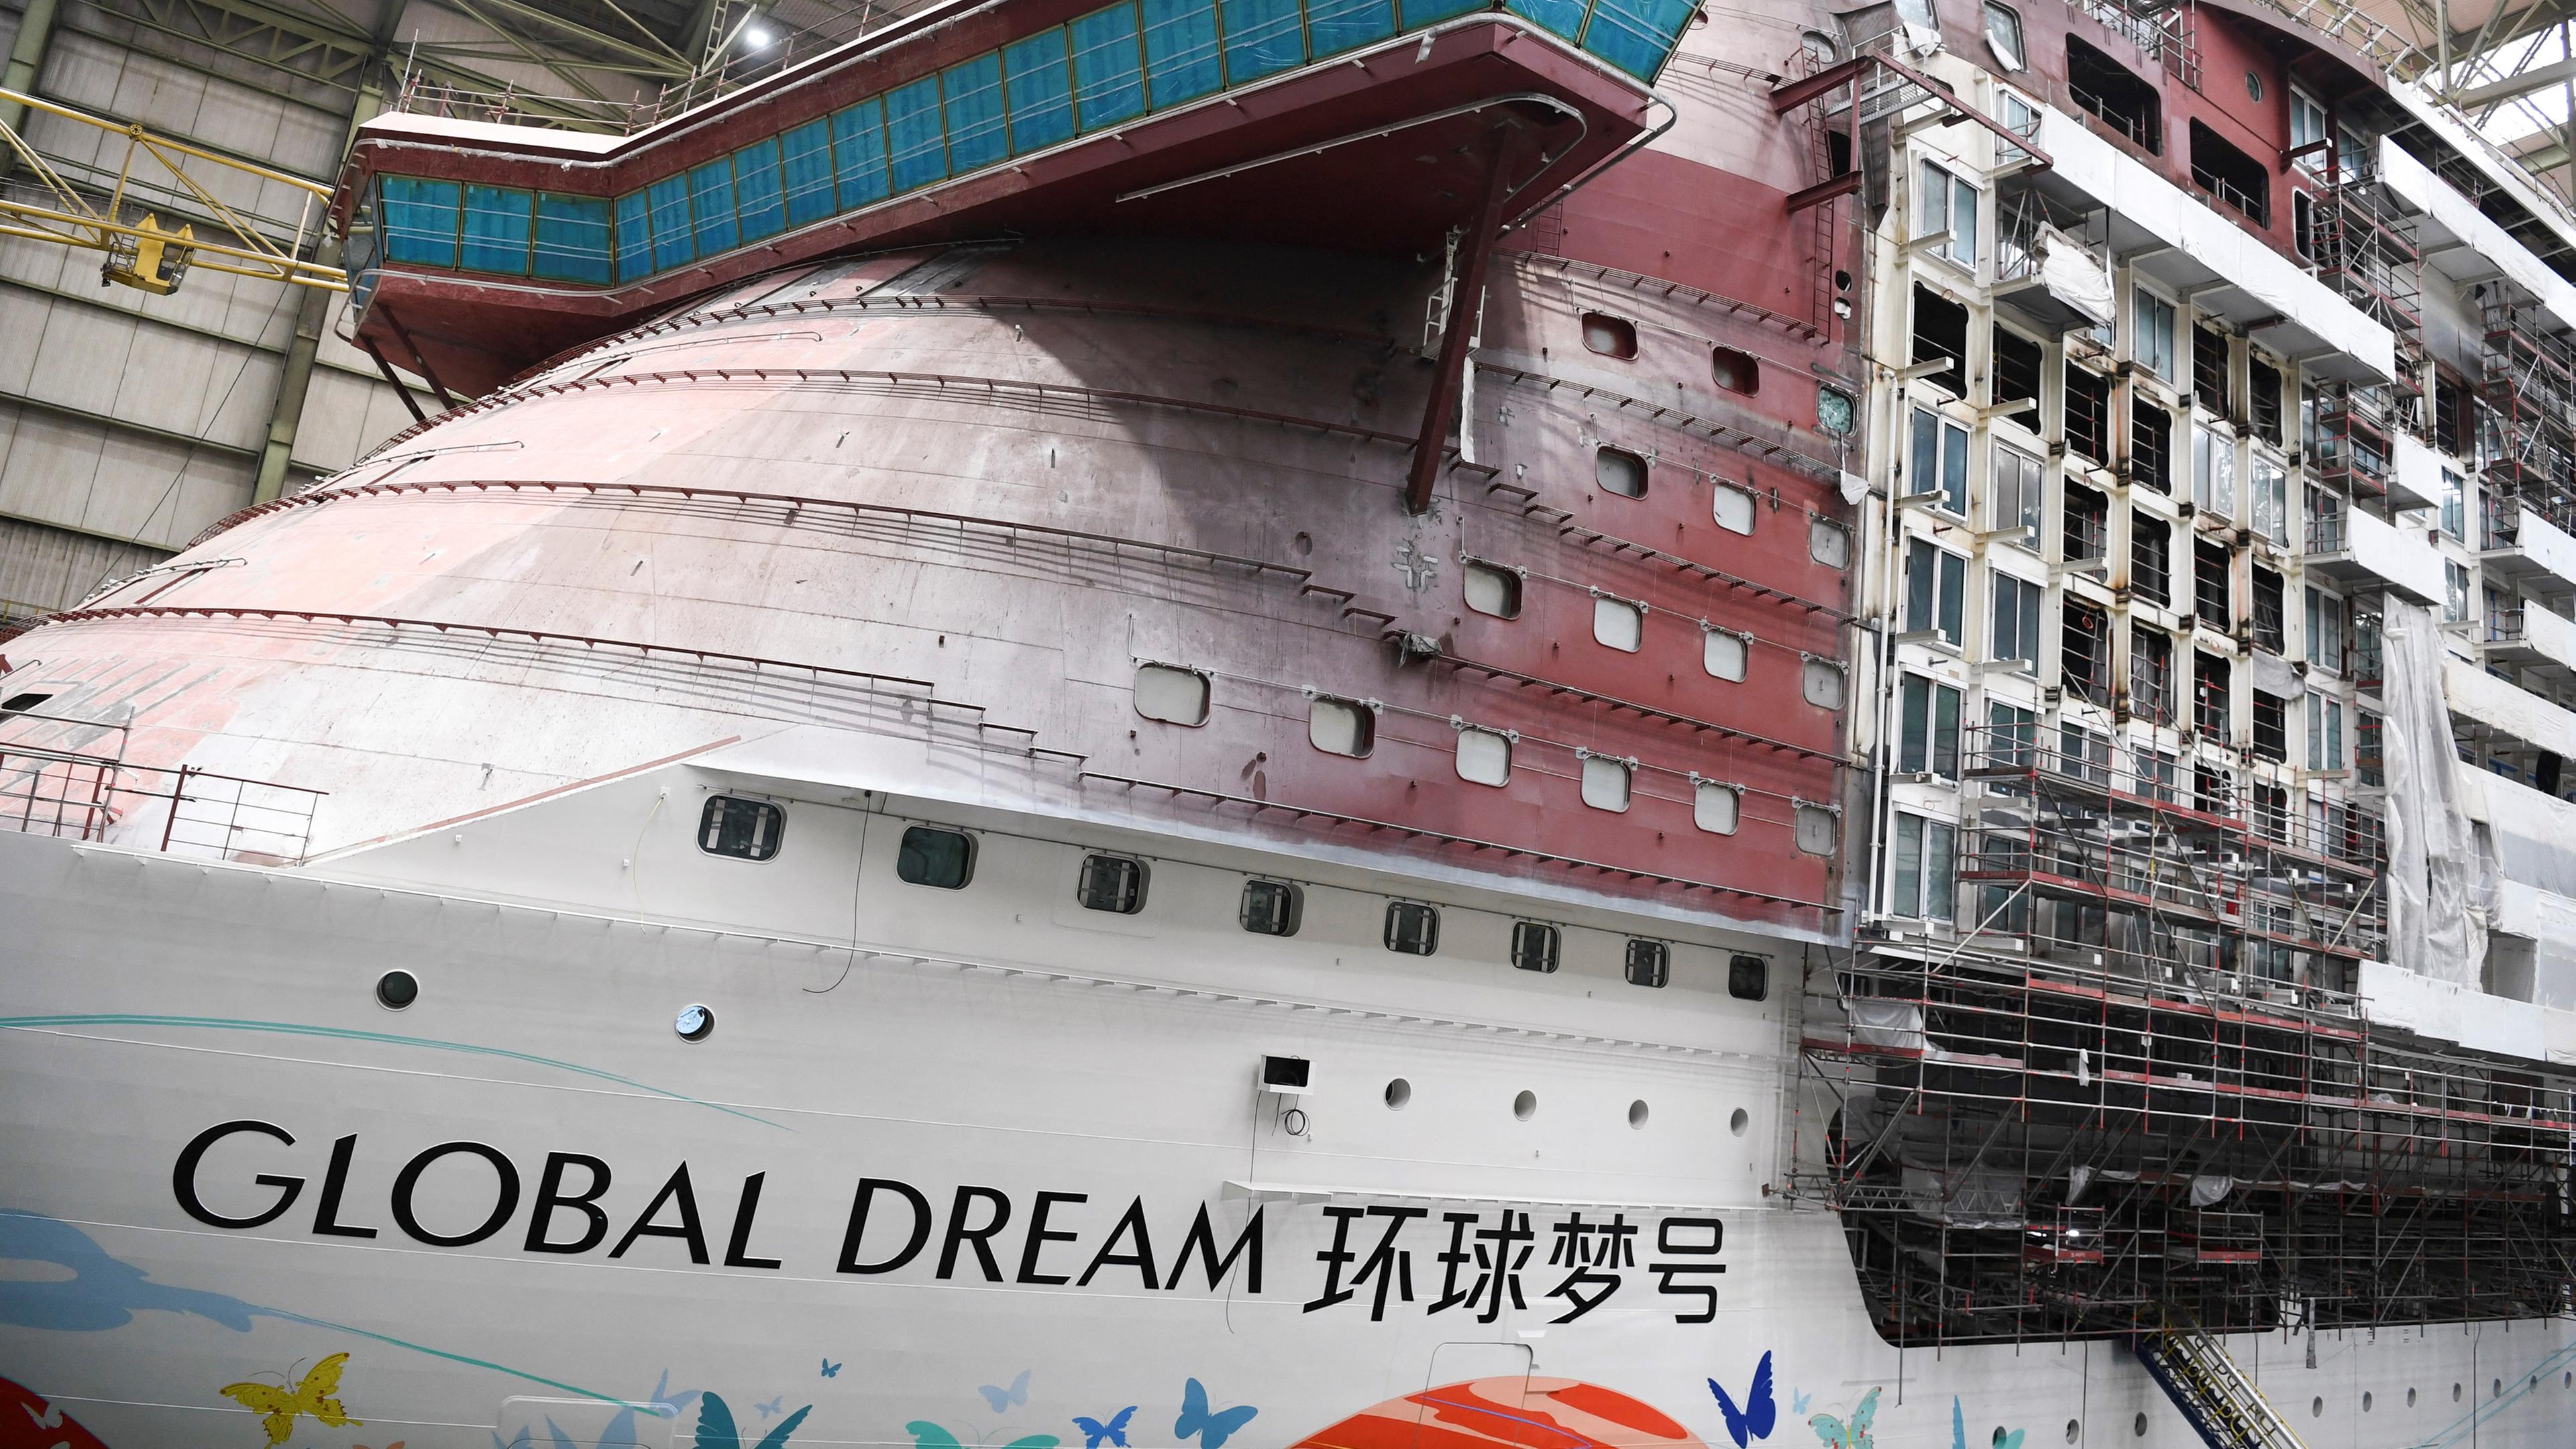 Kreuzfahrtschiff "Global Dream" in Werft 